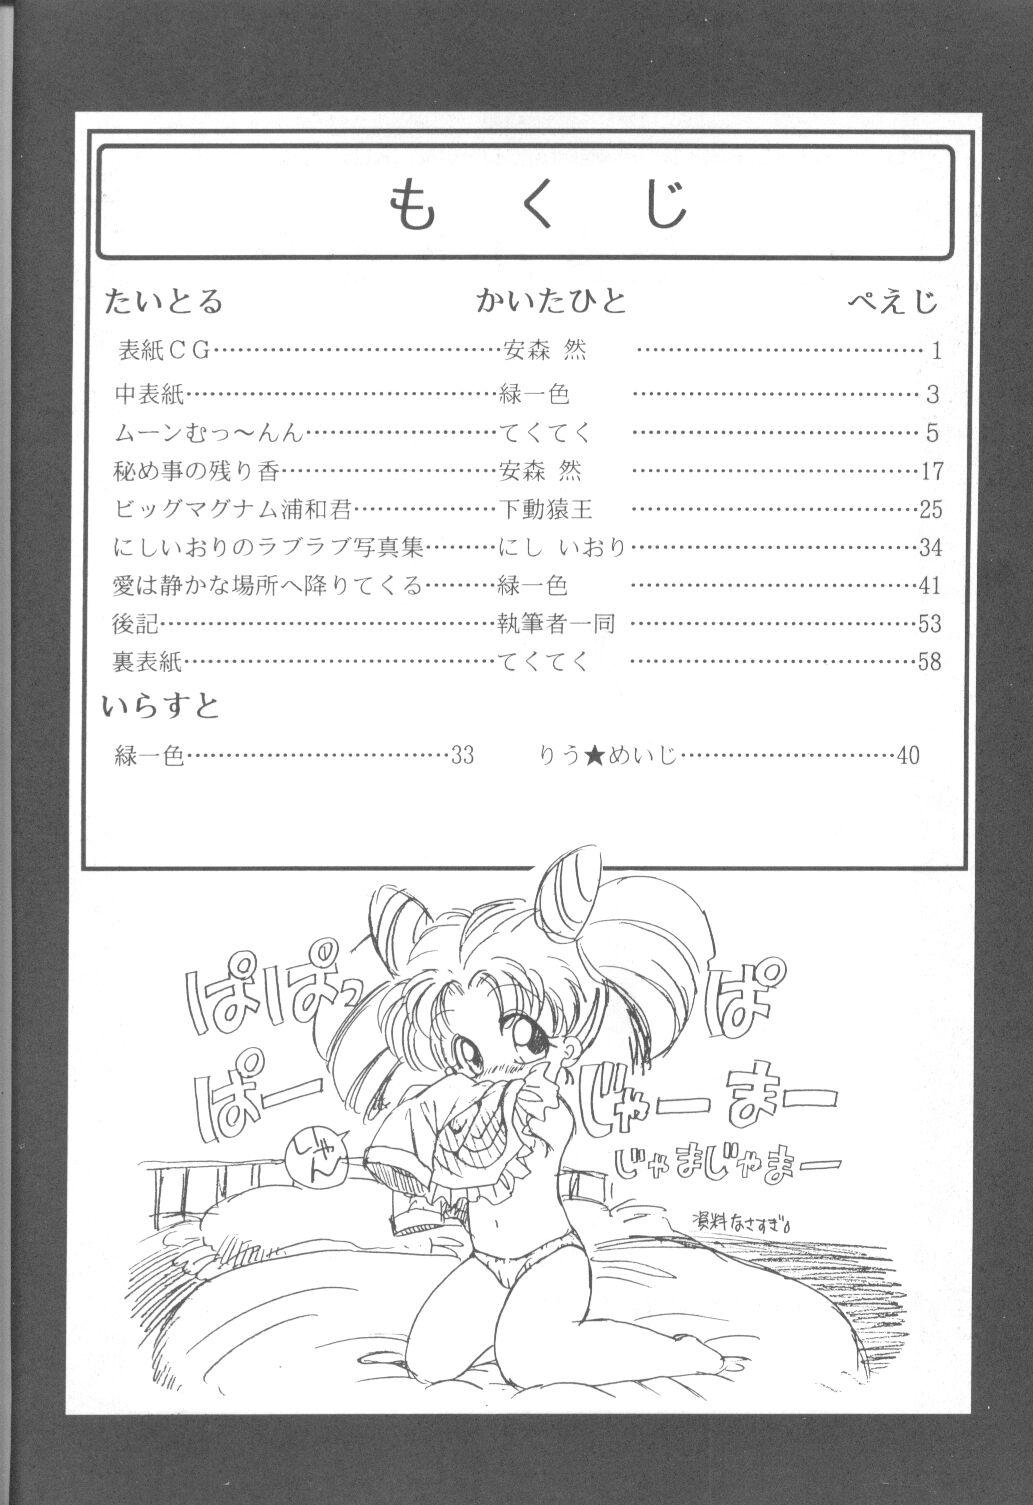 Bed Tabeta Kigasuru 9 - Sailor moon Culonas - Page 3